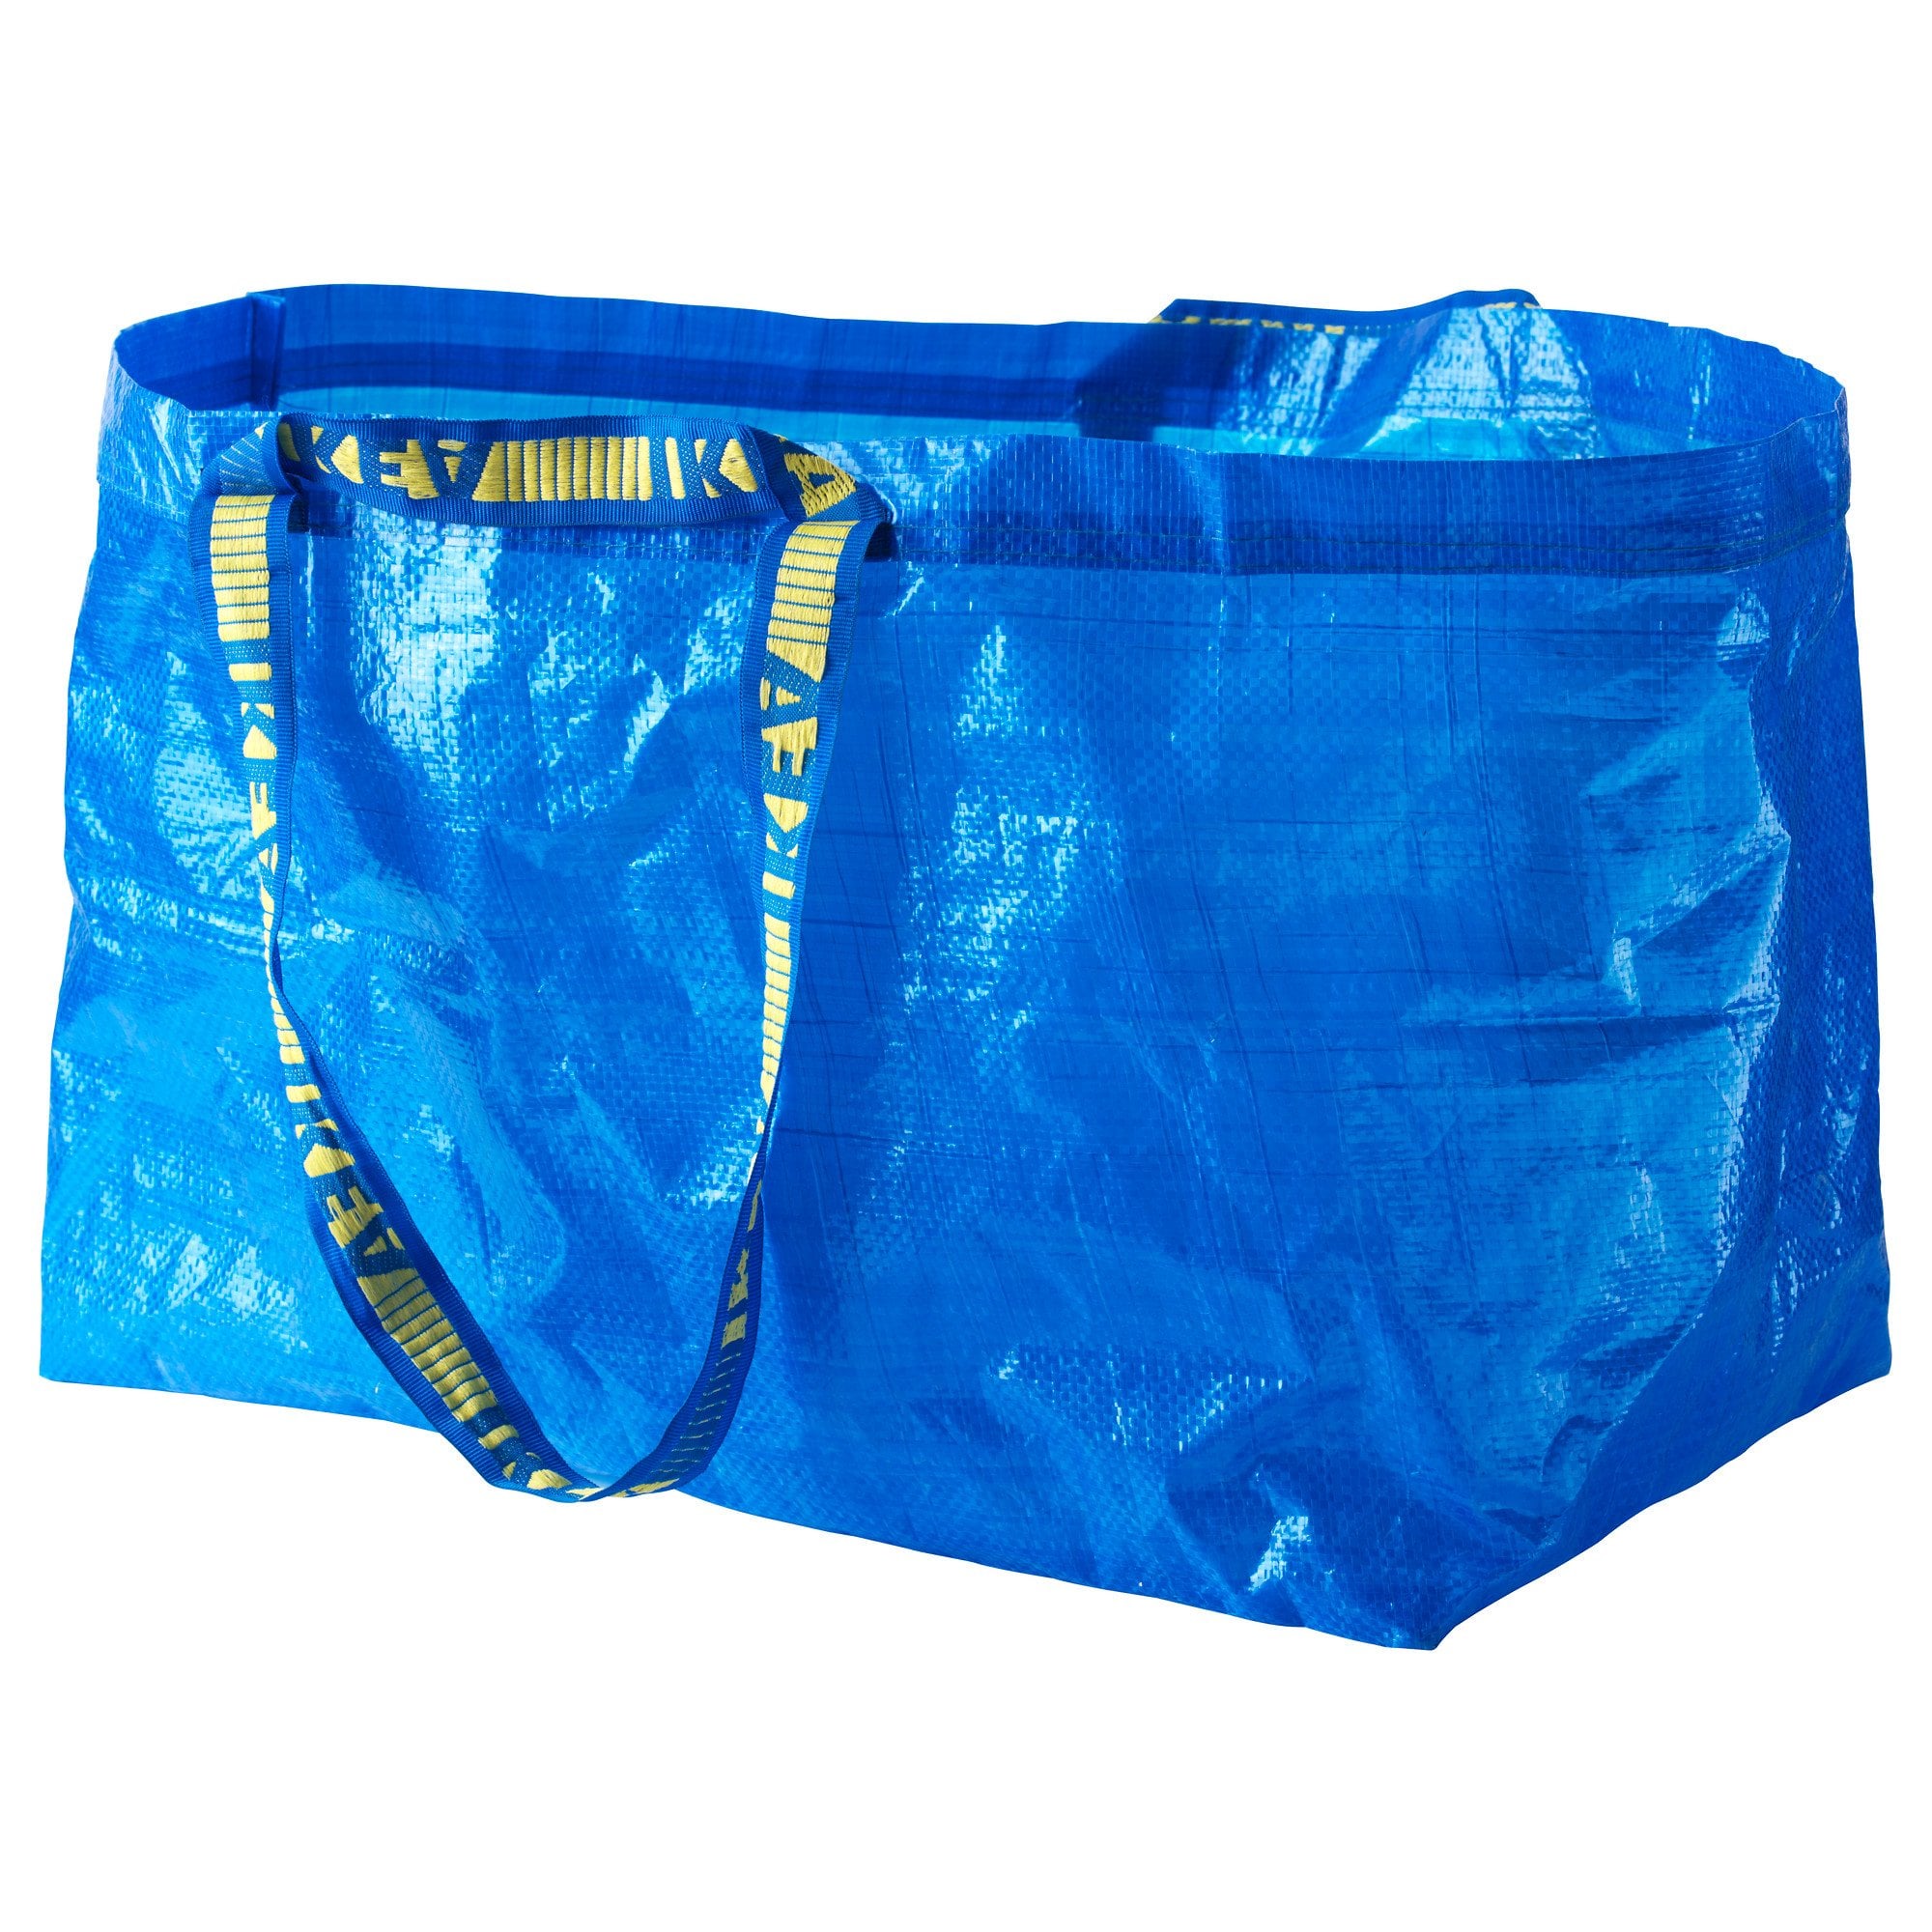 exceso casete Profesor Balenciaga Ikea Bag | POPSUGAR Fashion